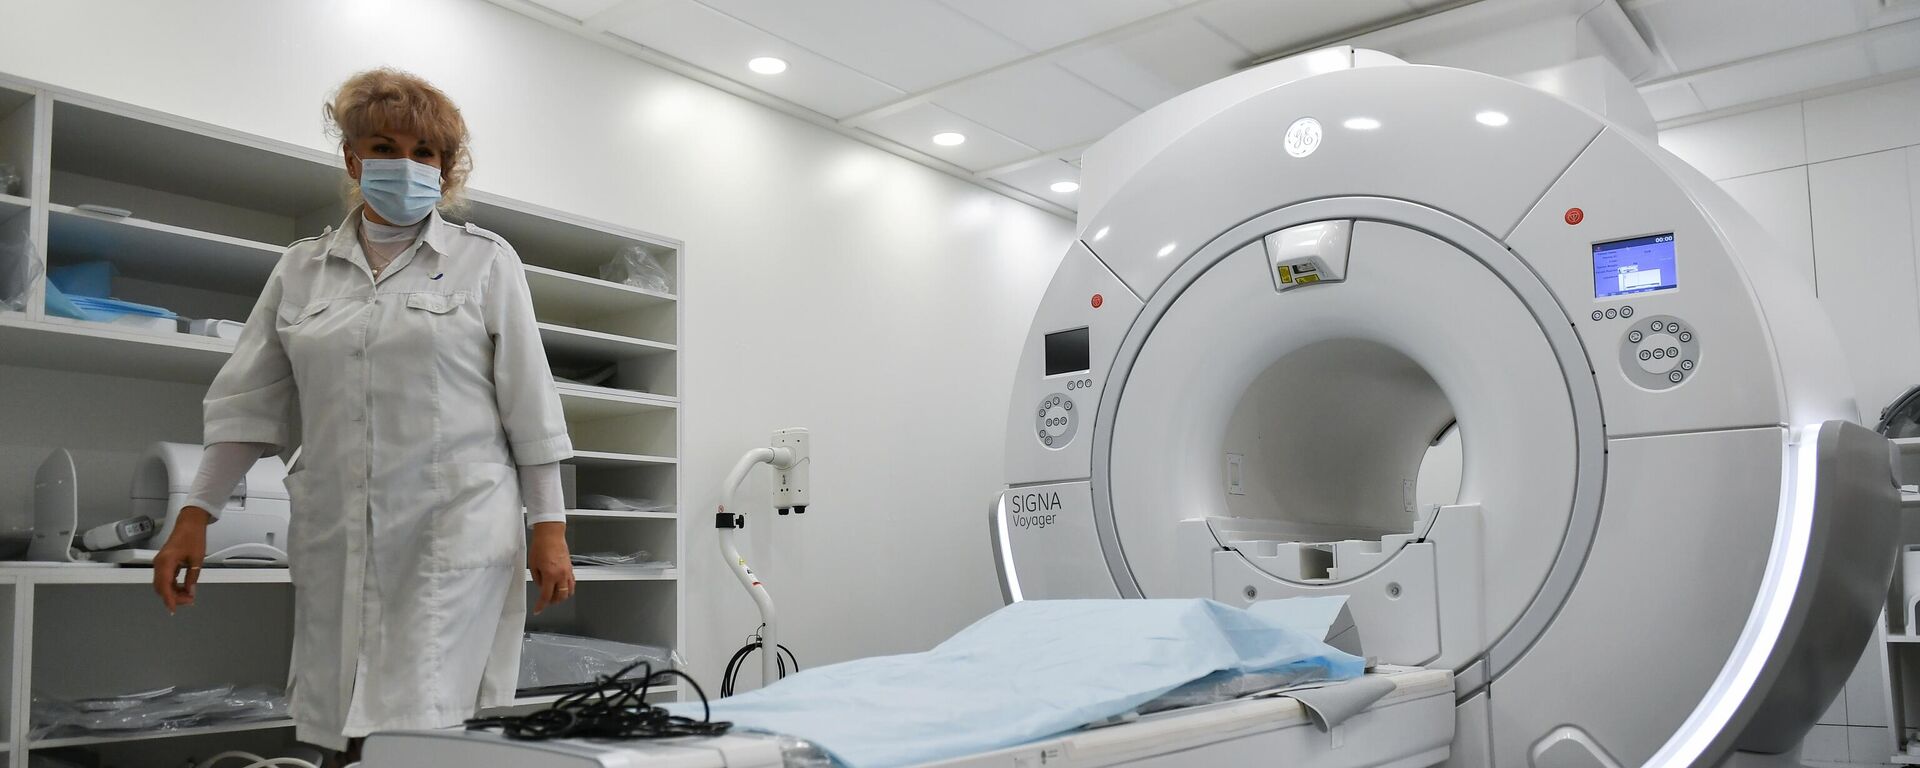 Магнитно-резонансный томограф в медицинском центре, архивное фото - Sputnik Литва, 1920, 21.10.2021